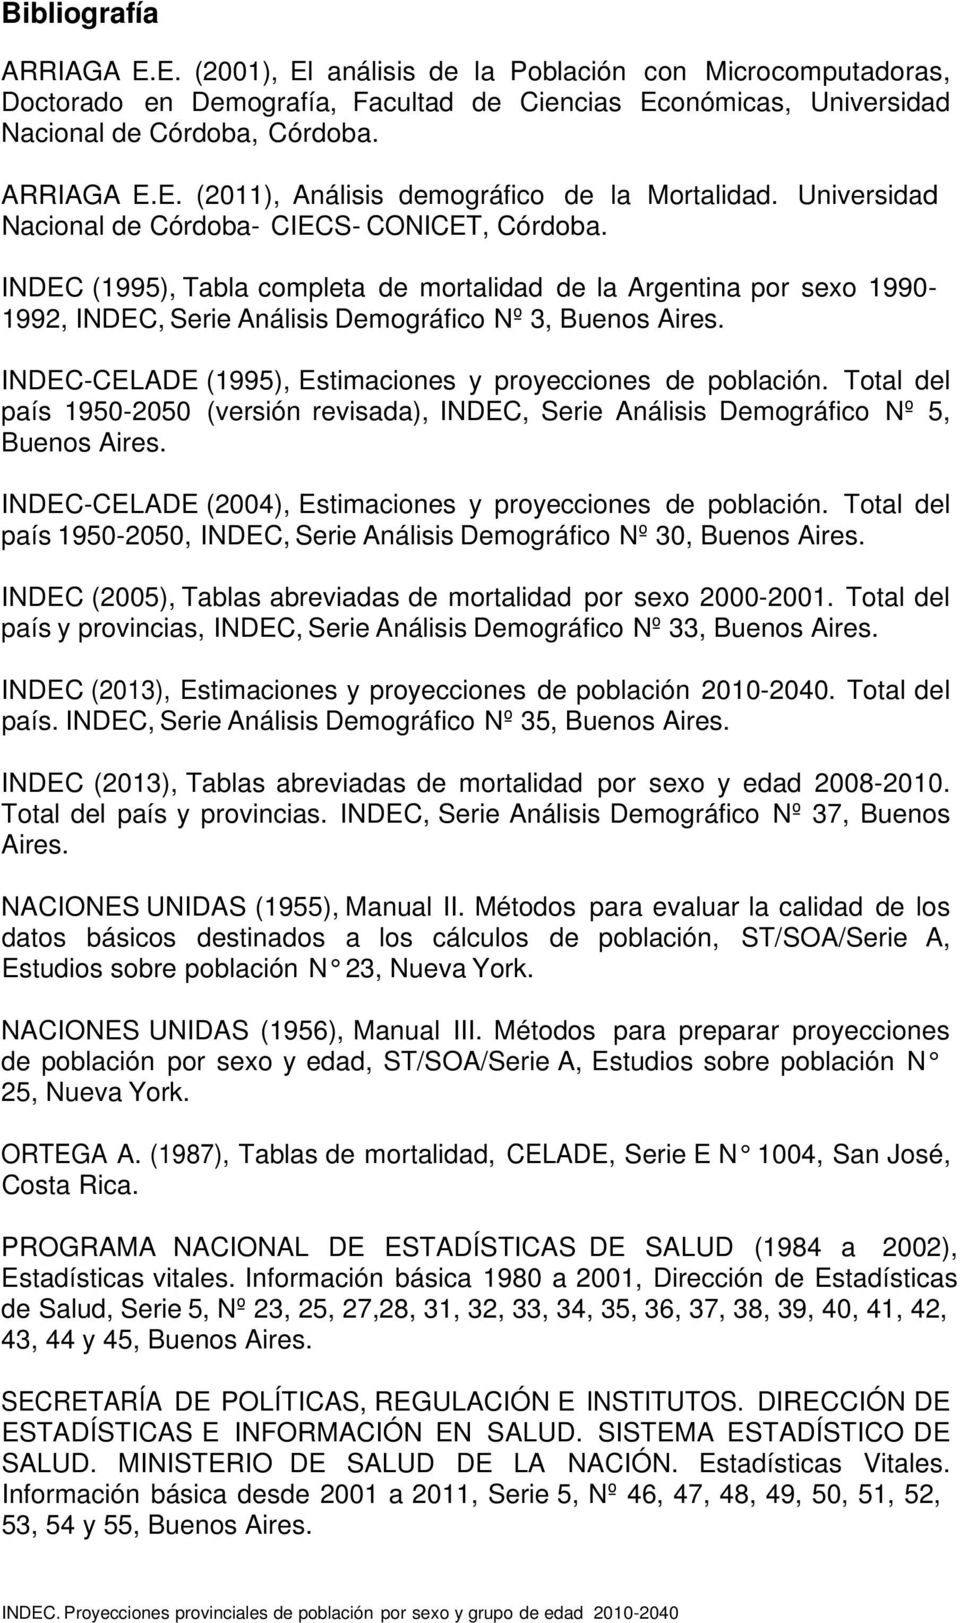 INDEC-CELADE (1995), Estimaciones y proyecciones de población. Total del país 1950-2050 (versión revisada), INDEC, Serie Análisis Demográfico Nº 5, Buenos Aires.